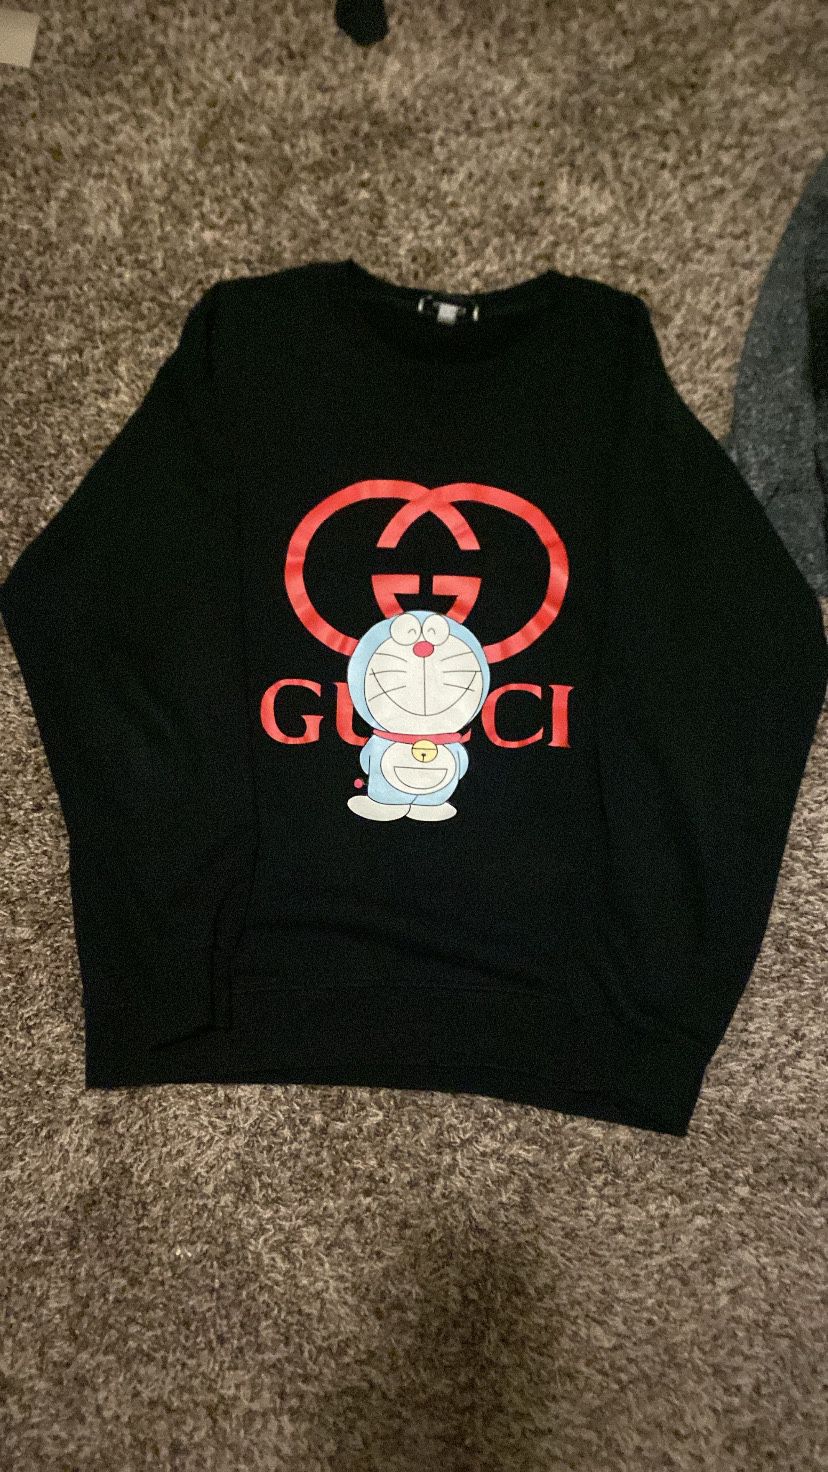 Gucci x Doraemon sweater for Sale in Pomona, CA - OfferUp